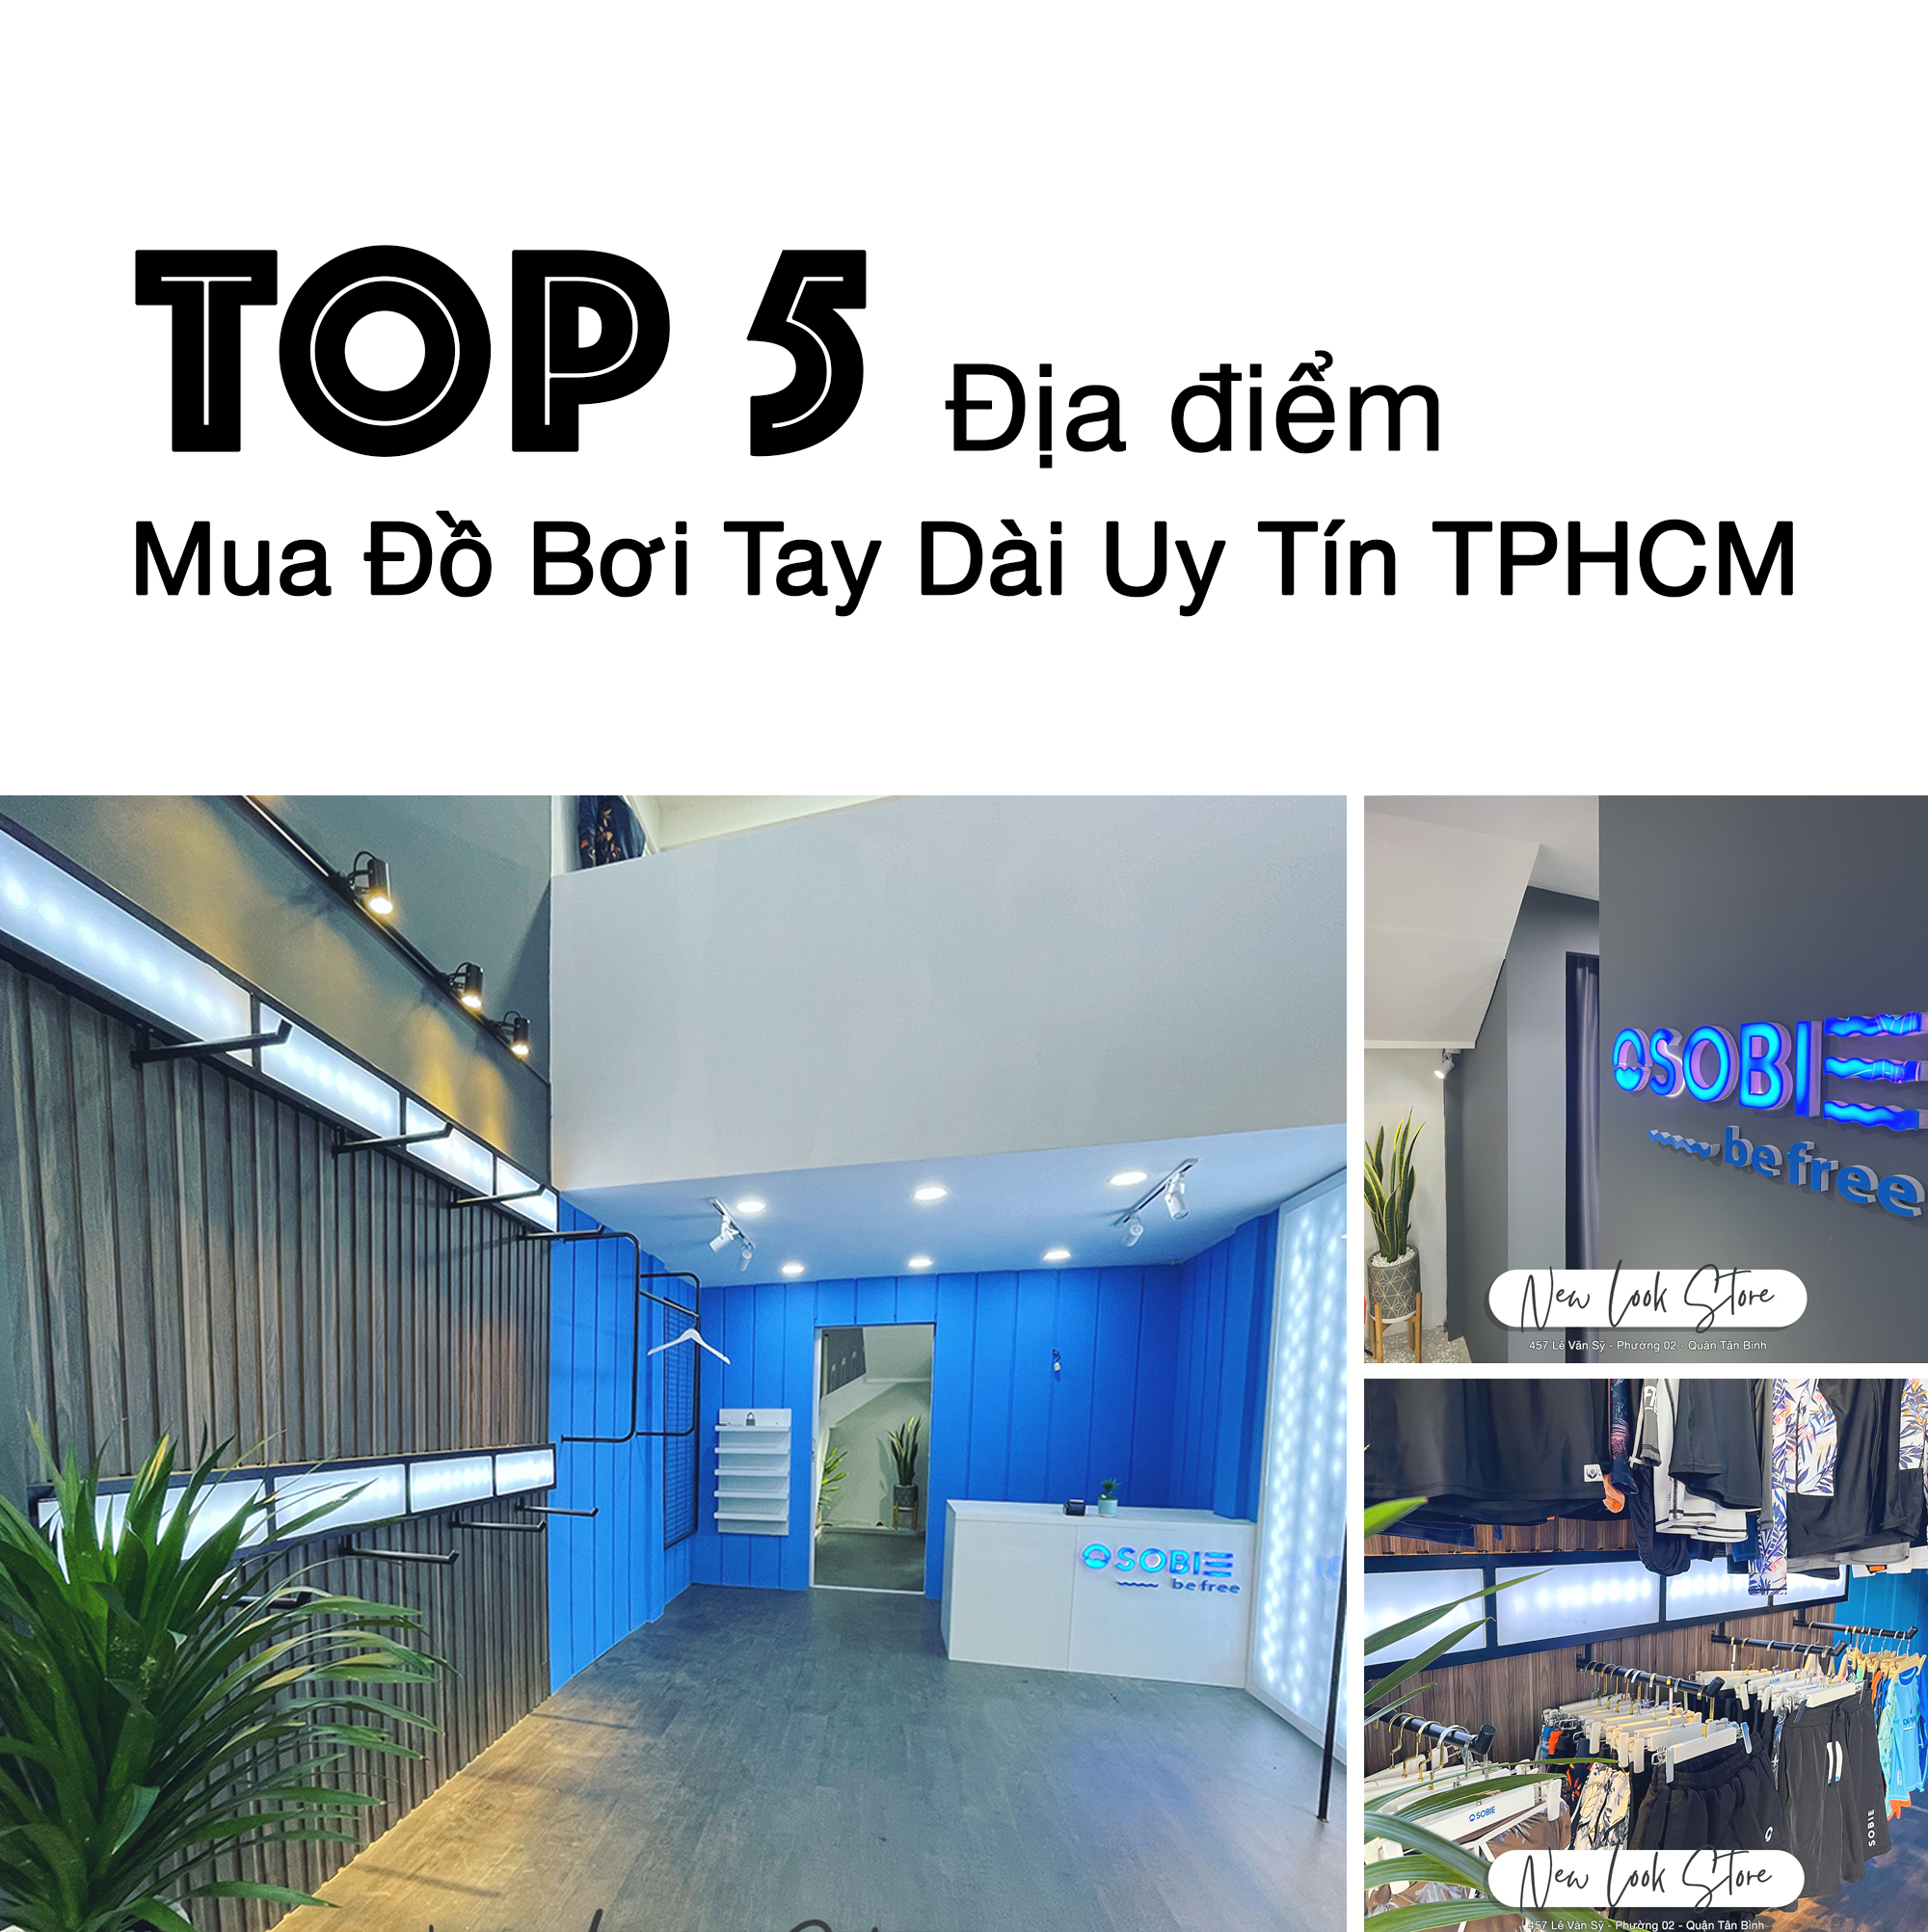 TOP 5 ĐỊA ĐIỂM MUA ĐỒ BƠI TAY DÀI UY TÍN TẠI TP HCM